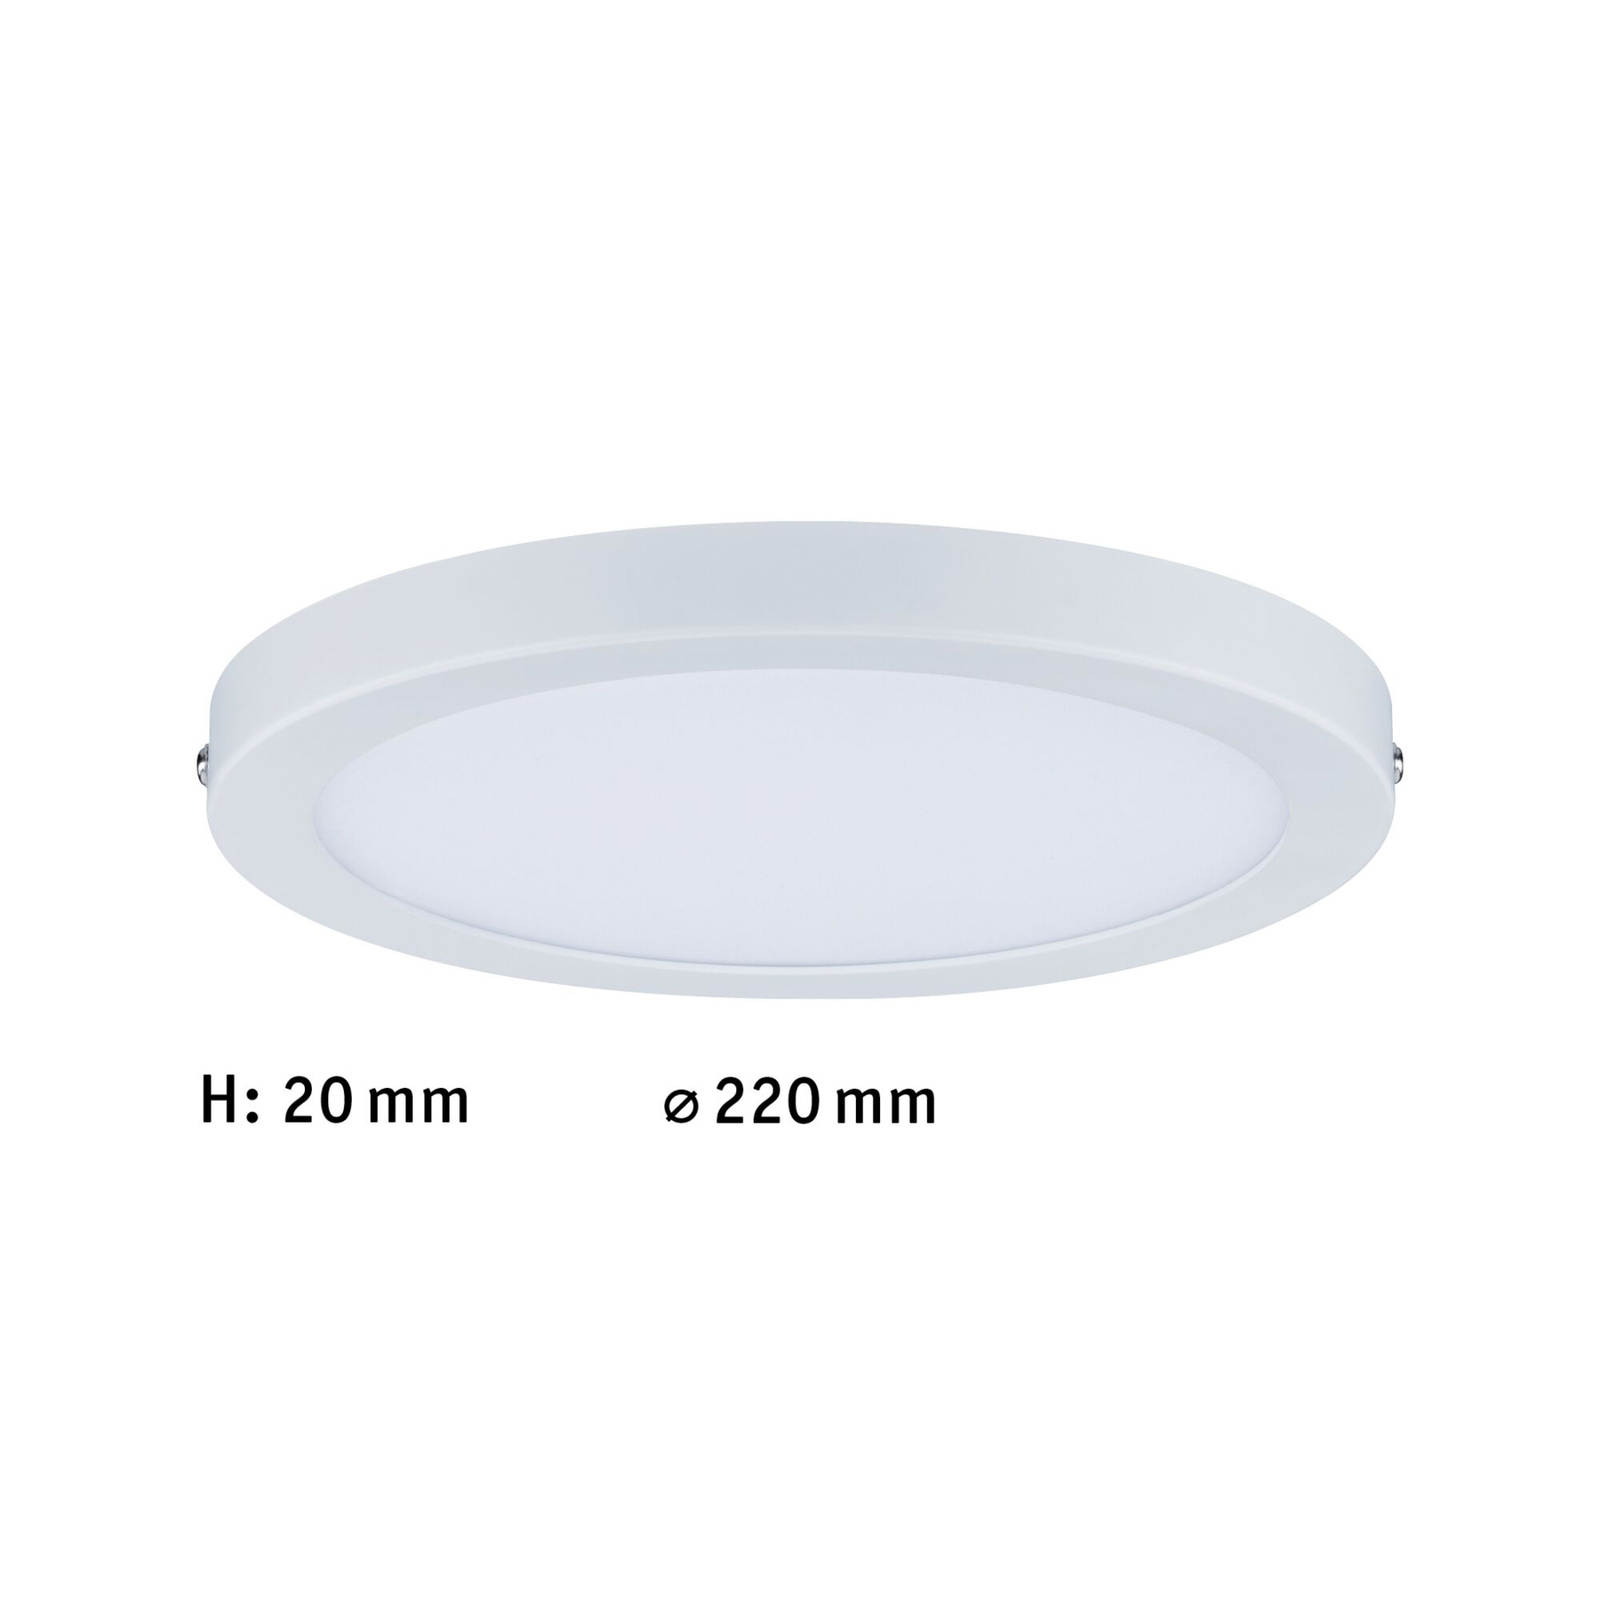 Paulmann Atria LED ceiling light Ø 22cm matt white